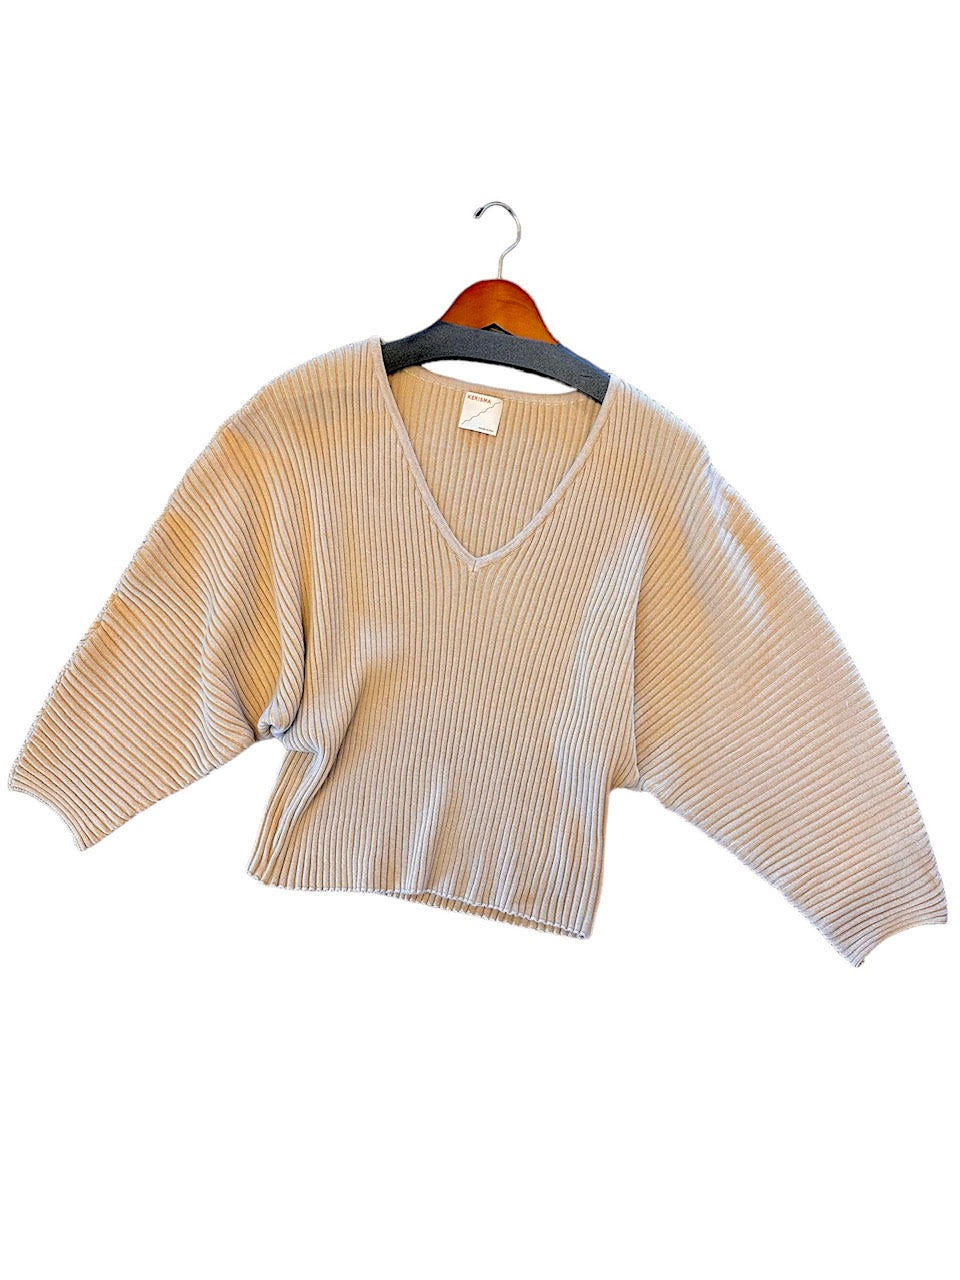 Keke Sweater in tahini by Kerisma